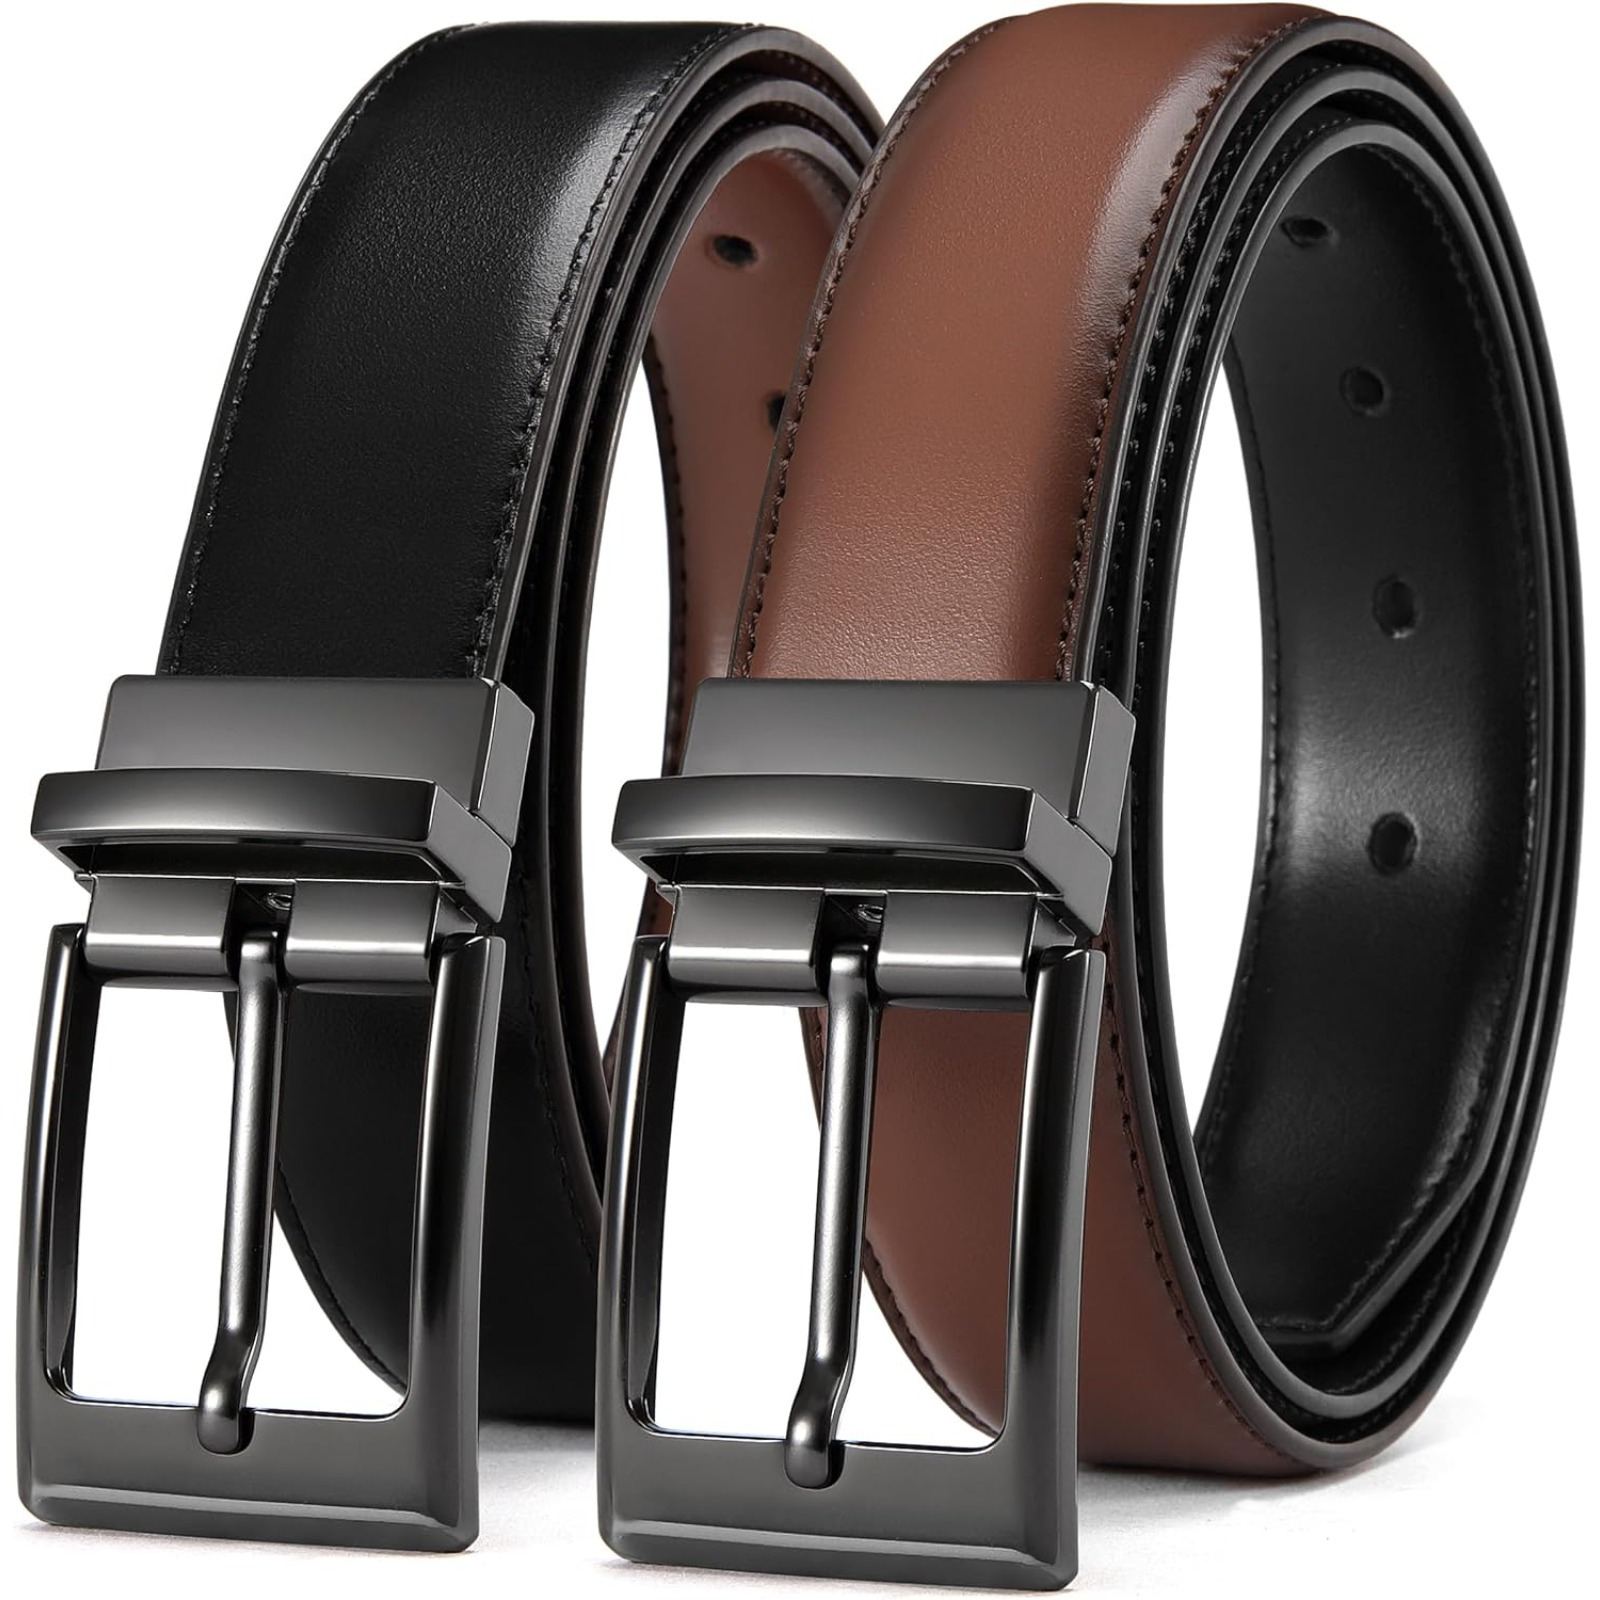 

Chaoren Leather Belt For Men - 1.25" Reversible Mens Belt For Dress Pants - 2 Styles In 1 Belt